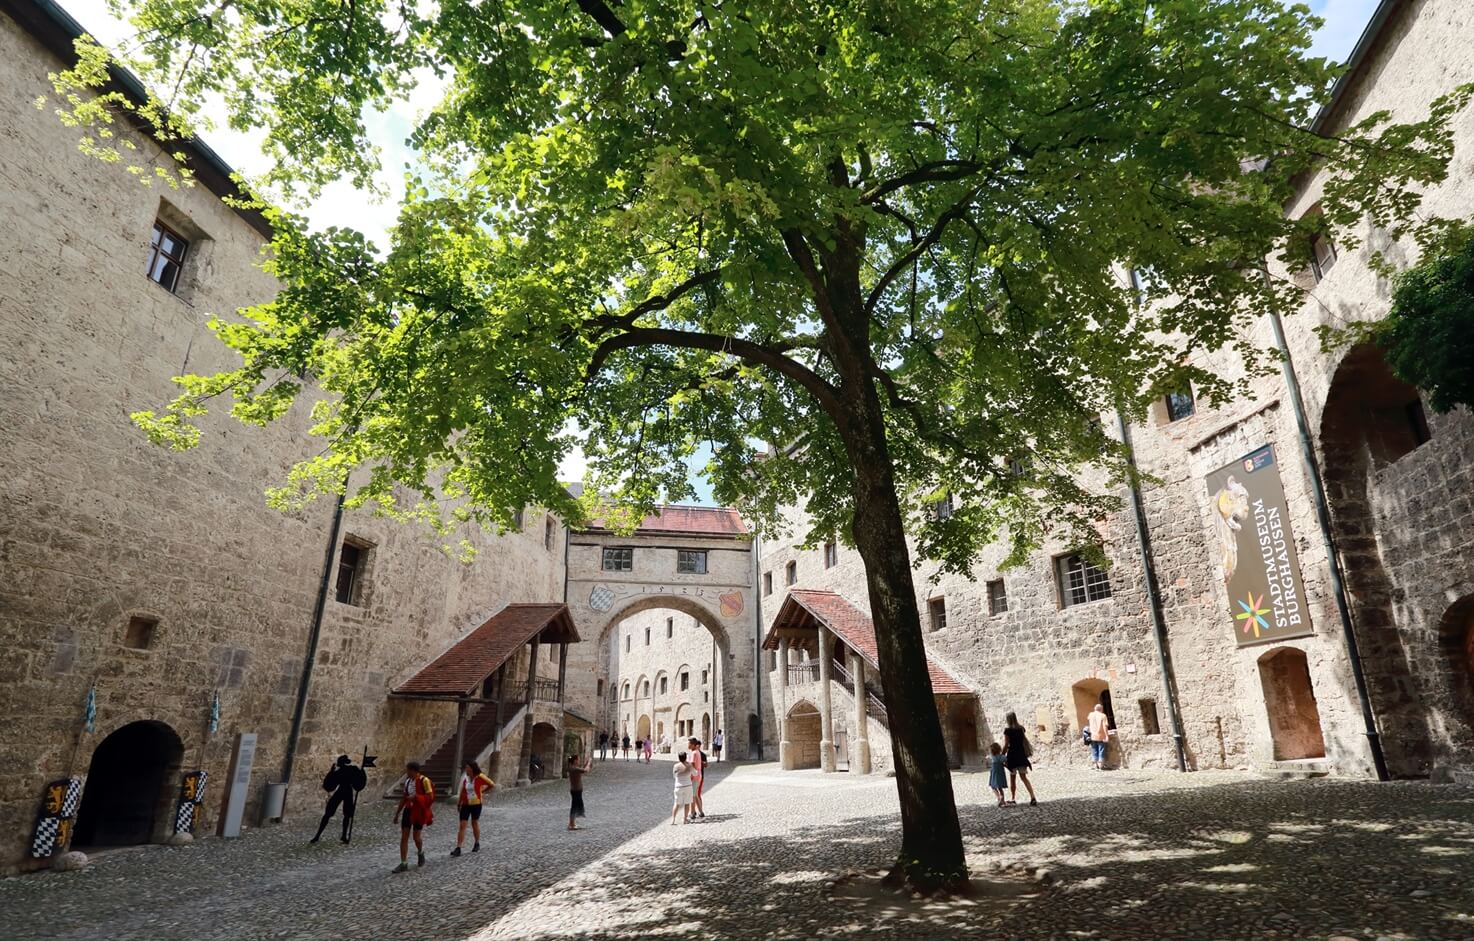 Innenhof der Hauptburg Burghausen mit Besuchern und Bäumen